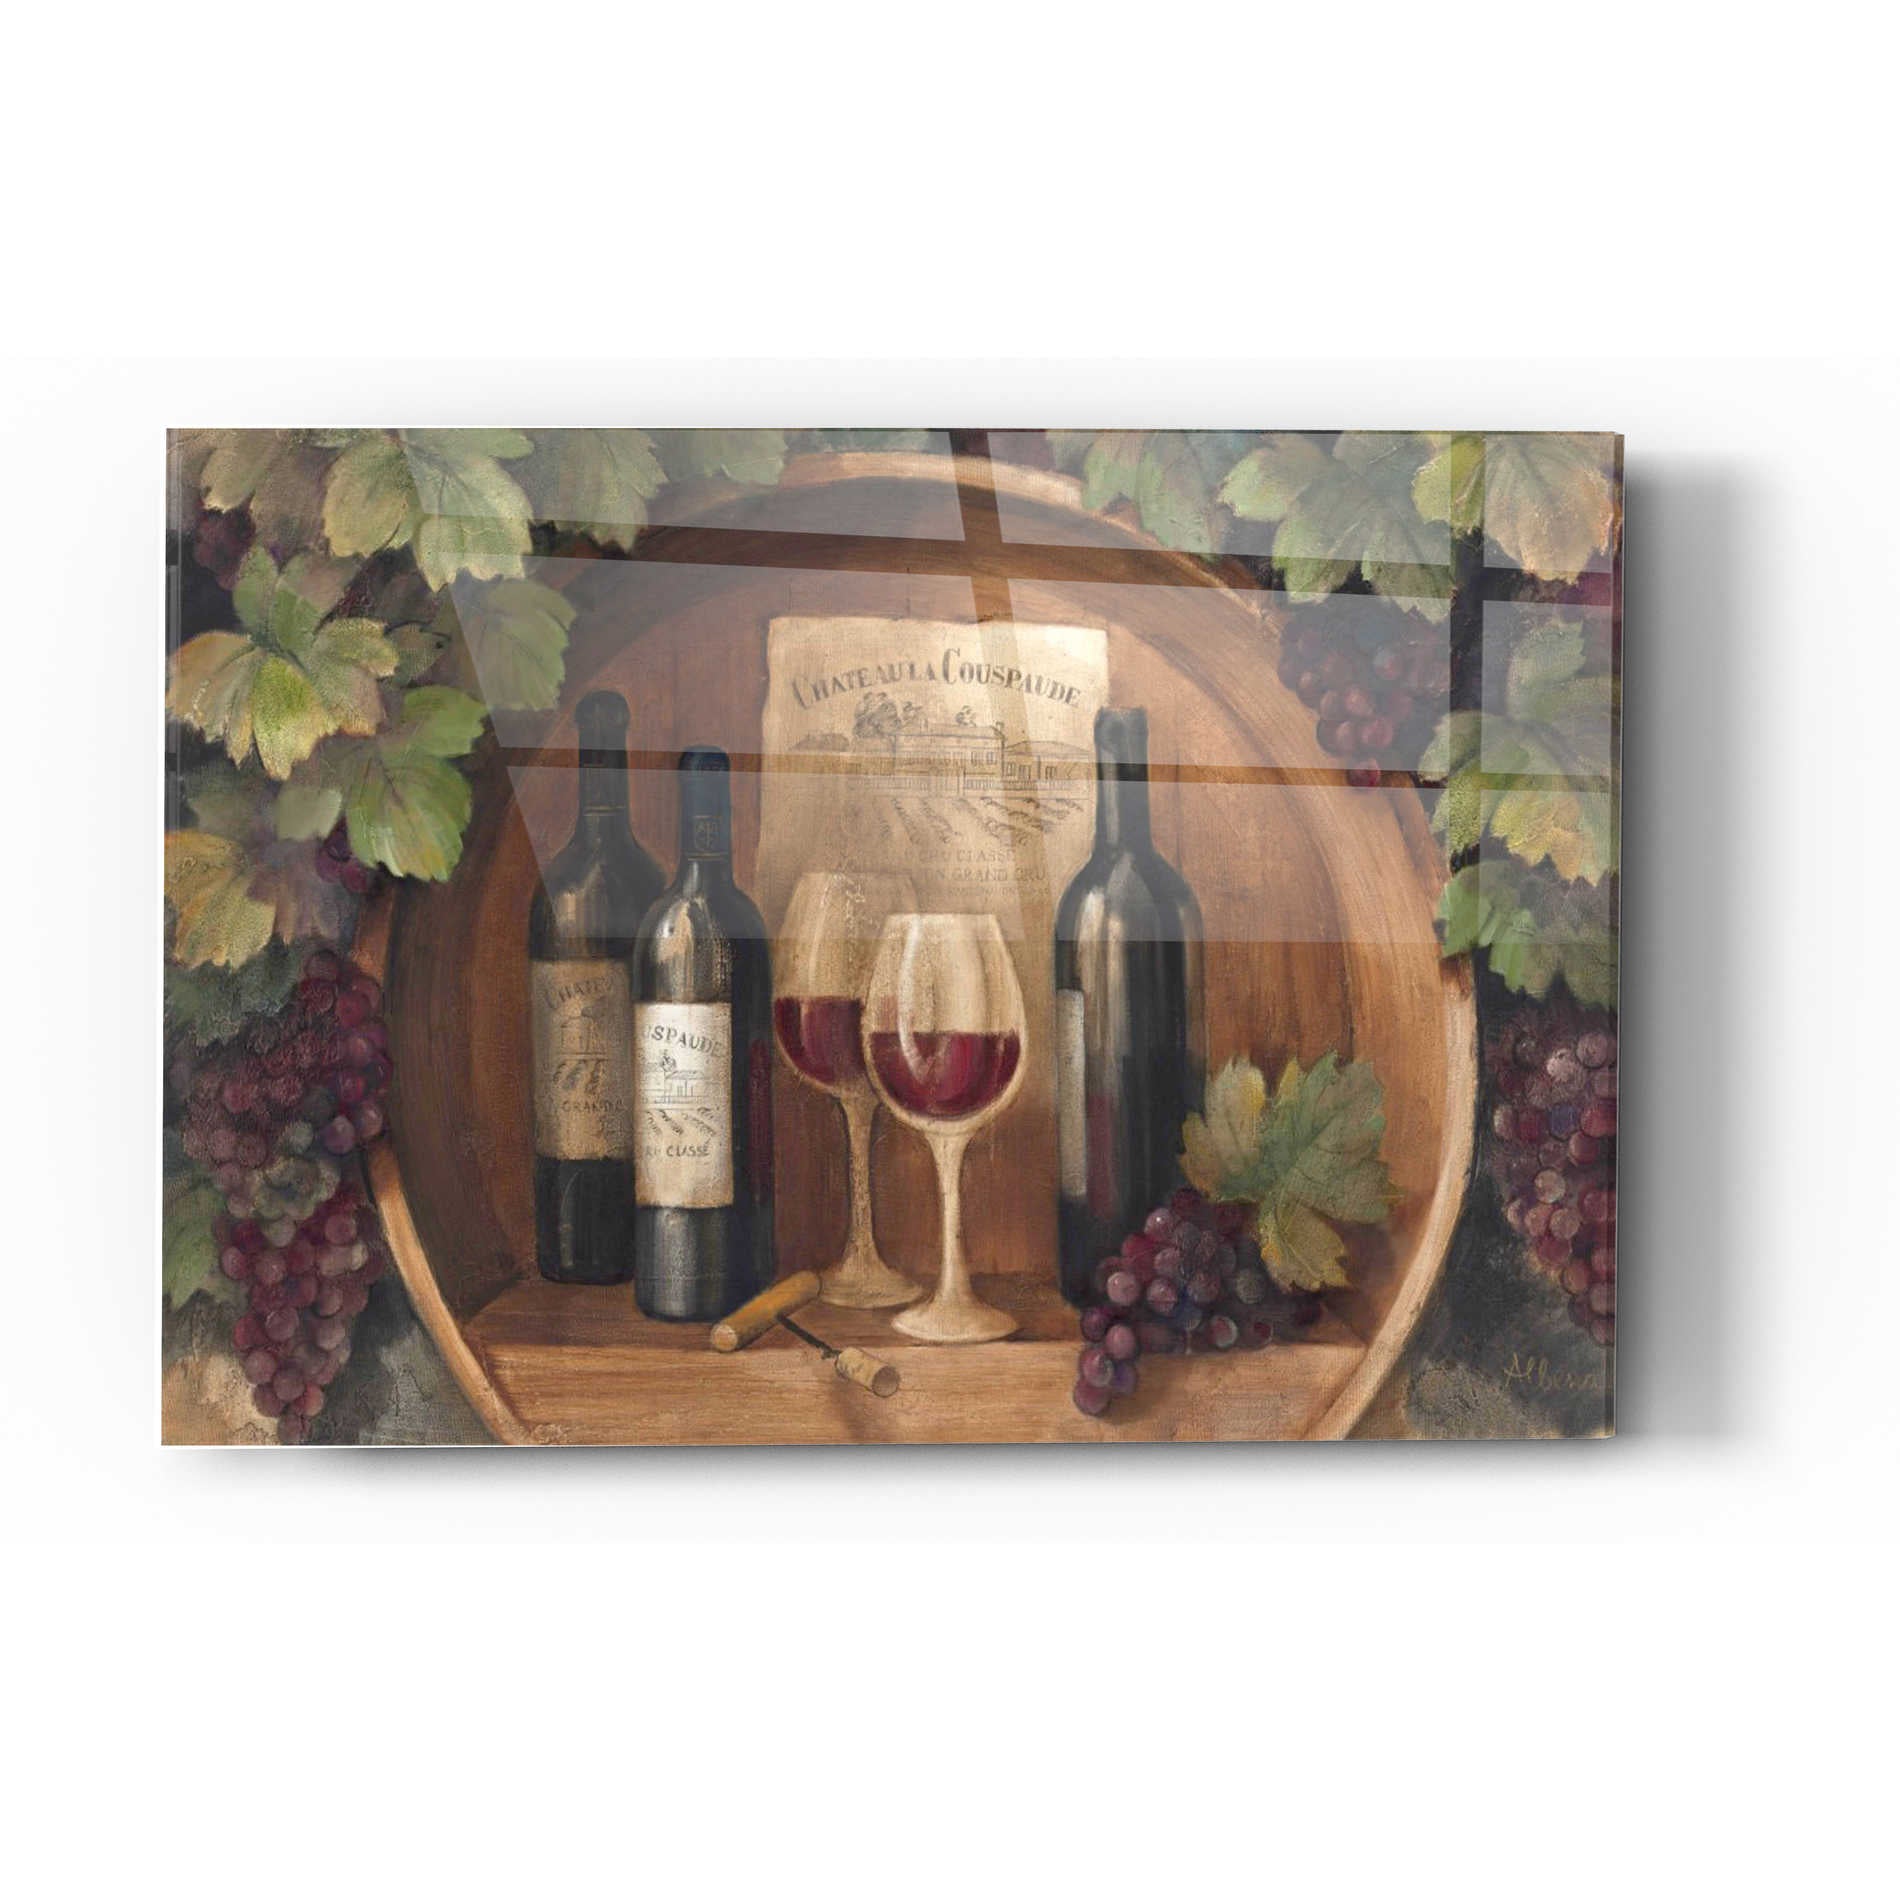 Epic Art 'At the Winery' by Albena Hristova, Acrylic Glass Wall Art,16x24